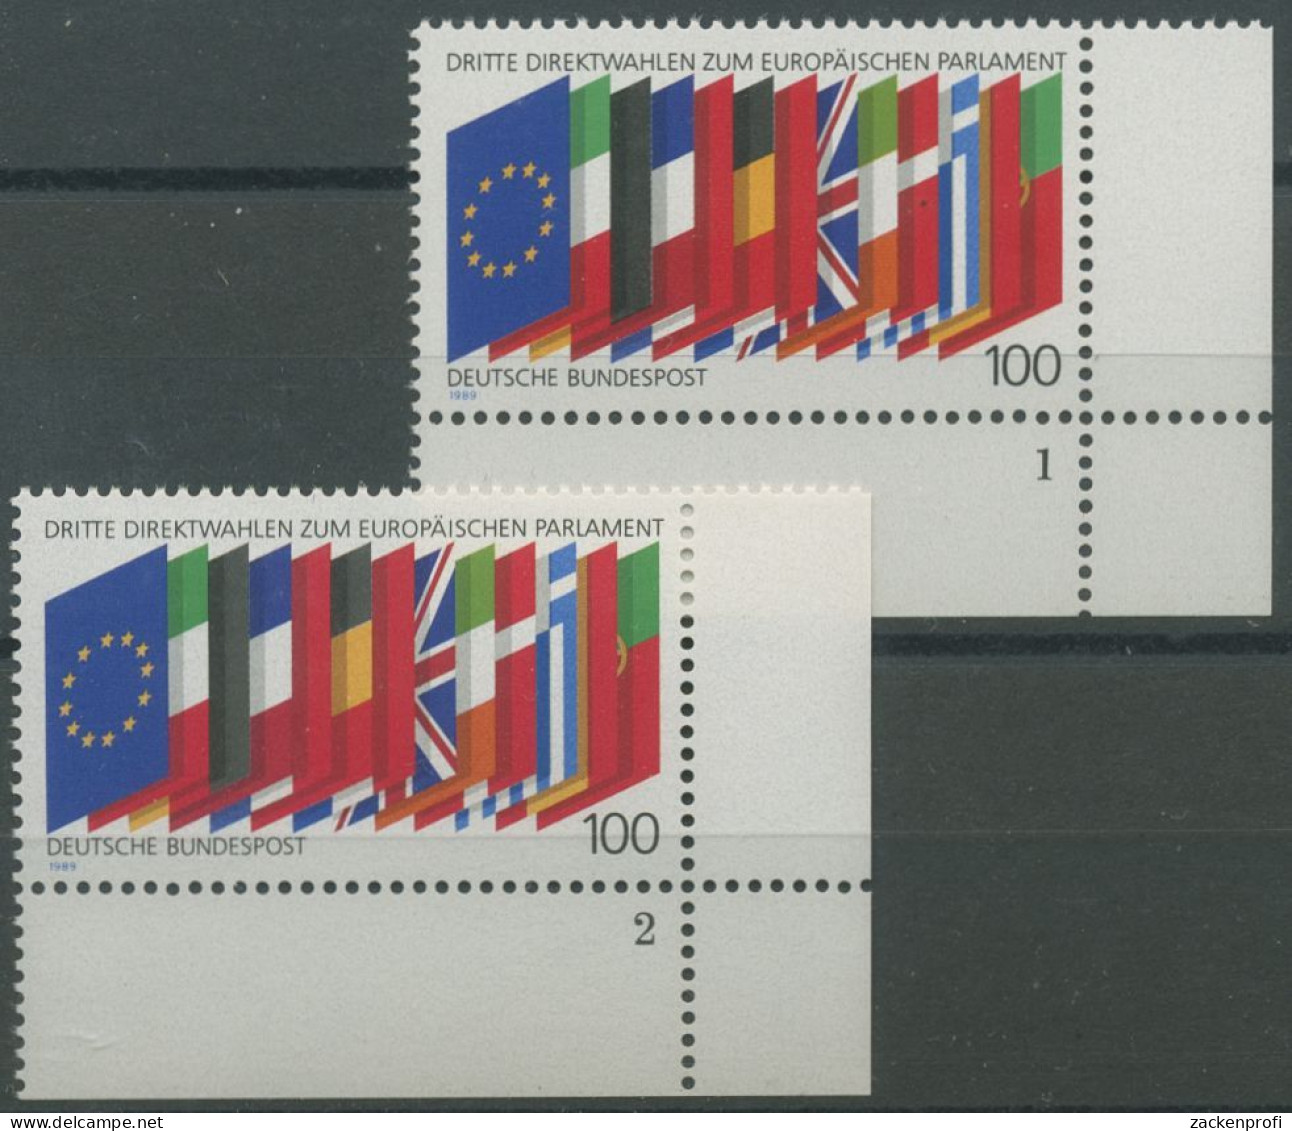 Bund 1989 Direktwahlen Zum Europ. Parlament 1416 Ecke 4 FN 1,2 Postfrisch (E657) - Unused Stamps